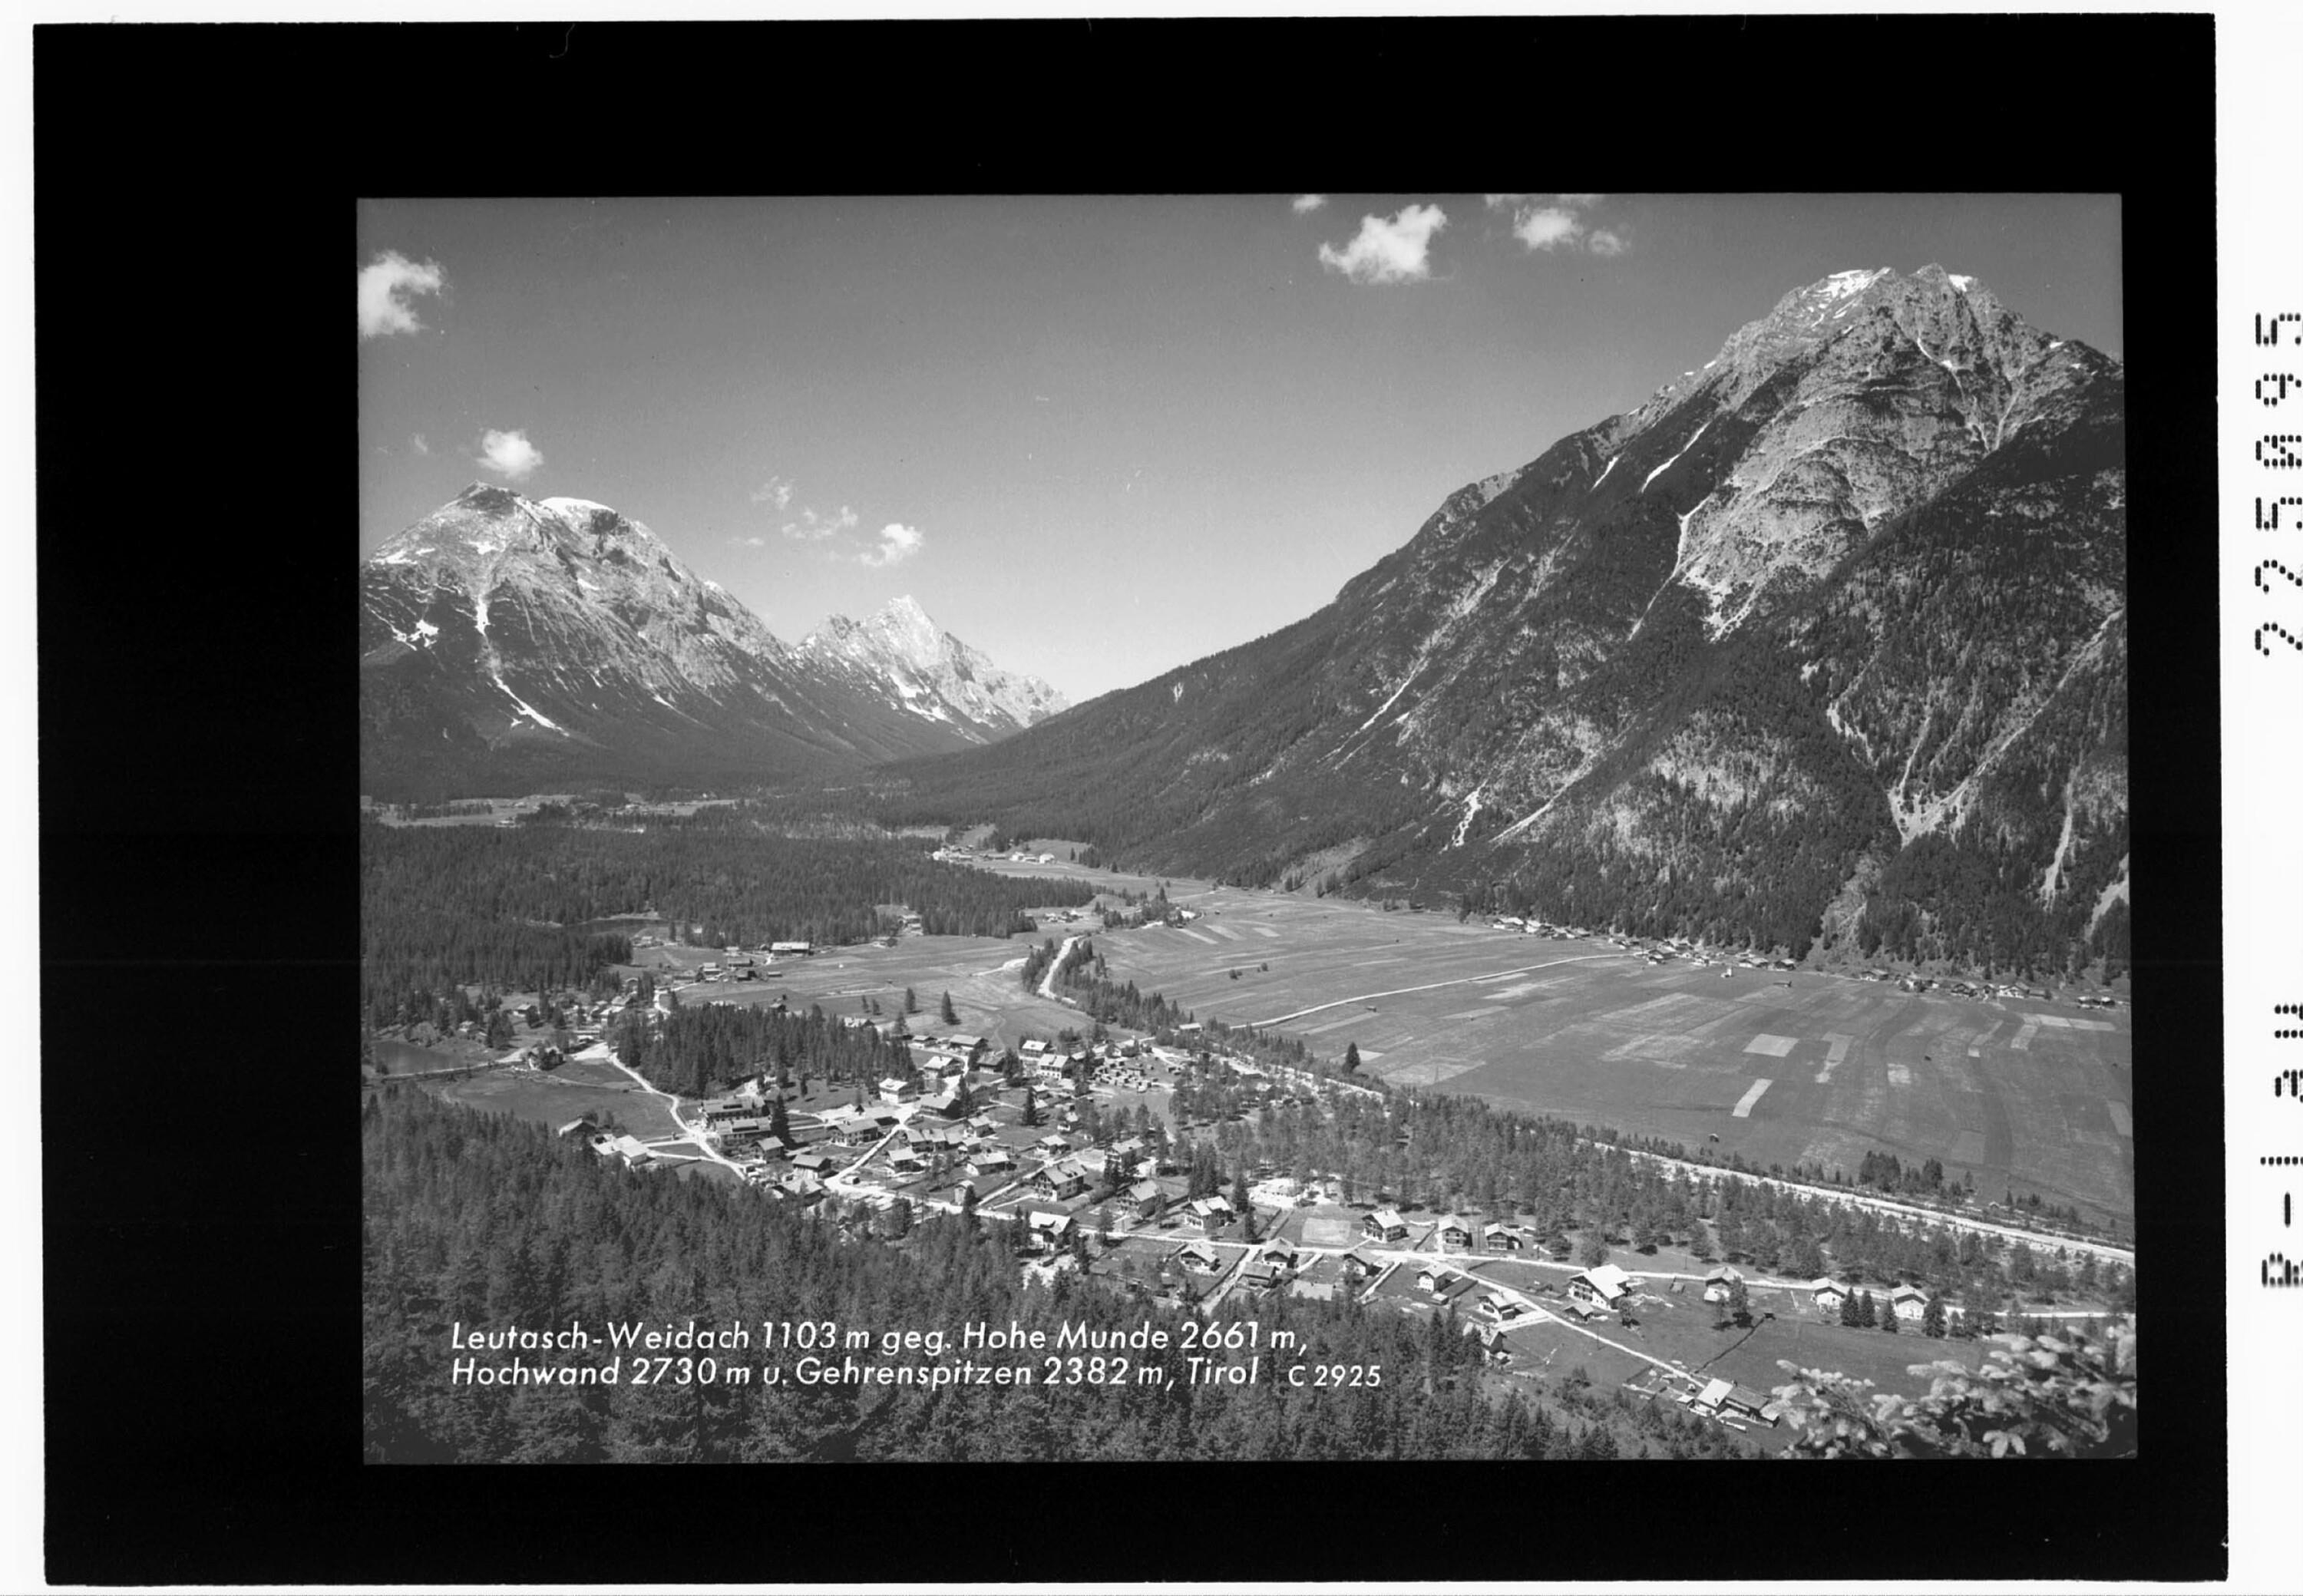 Leutasch - Weidach 1103 m gegen Hohe Munde 2661 m - Hochwand 2730 m und Gehrenspitze 2382 m / Tirol></div>


    <hr>
    <div class=